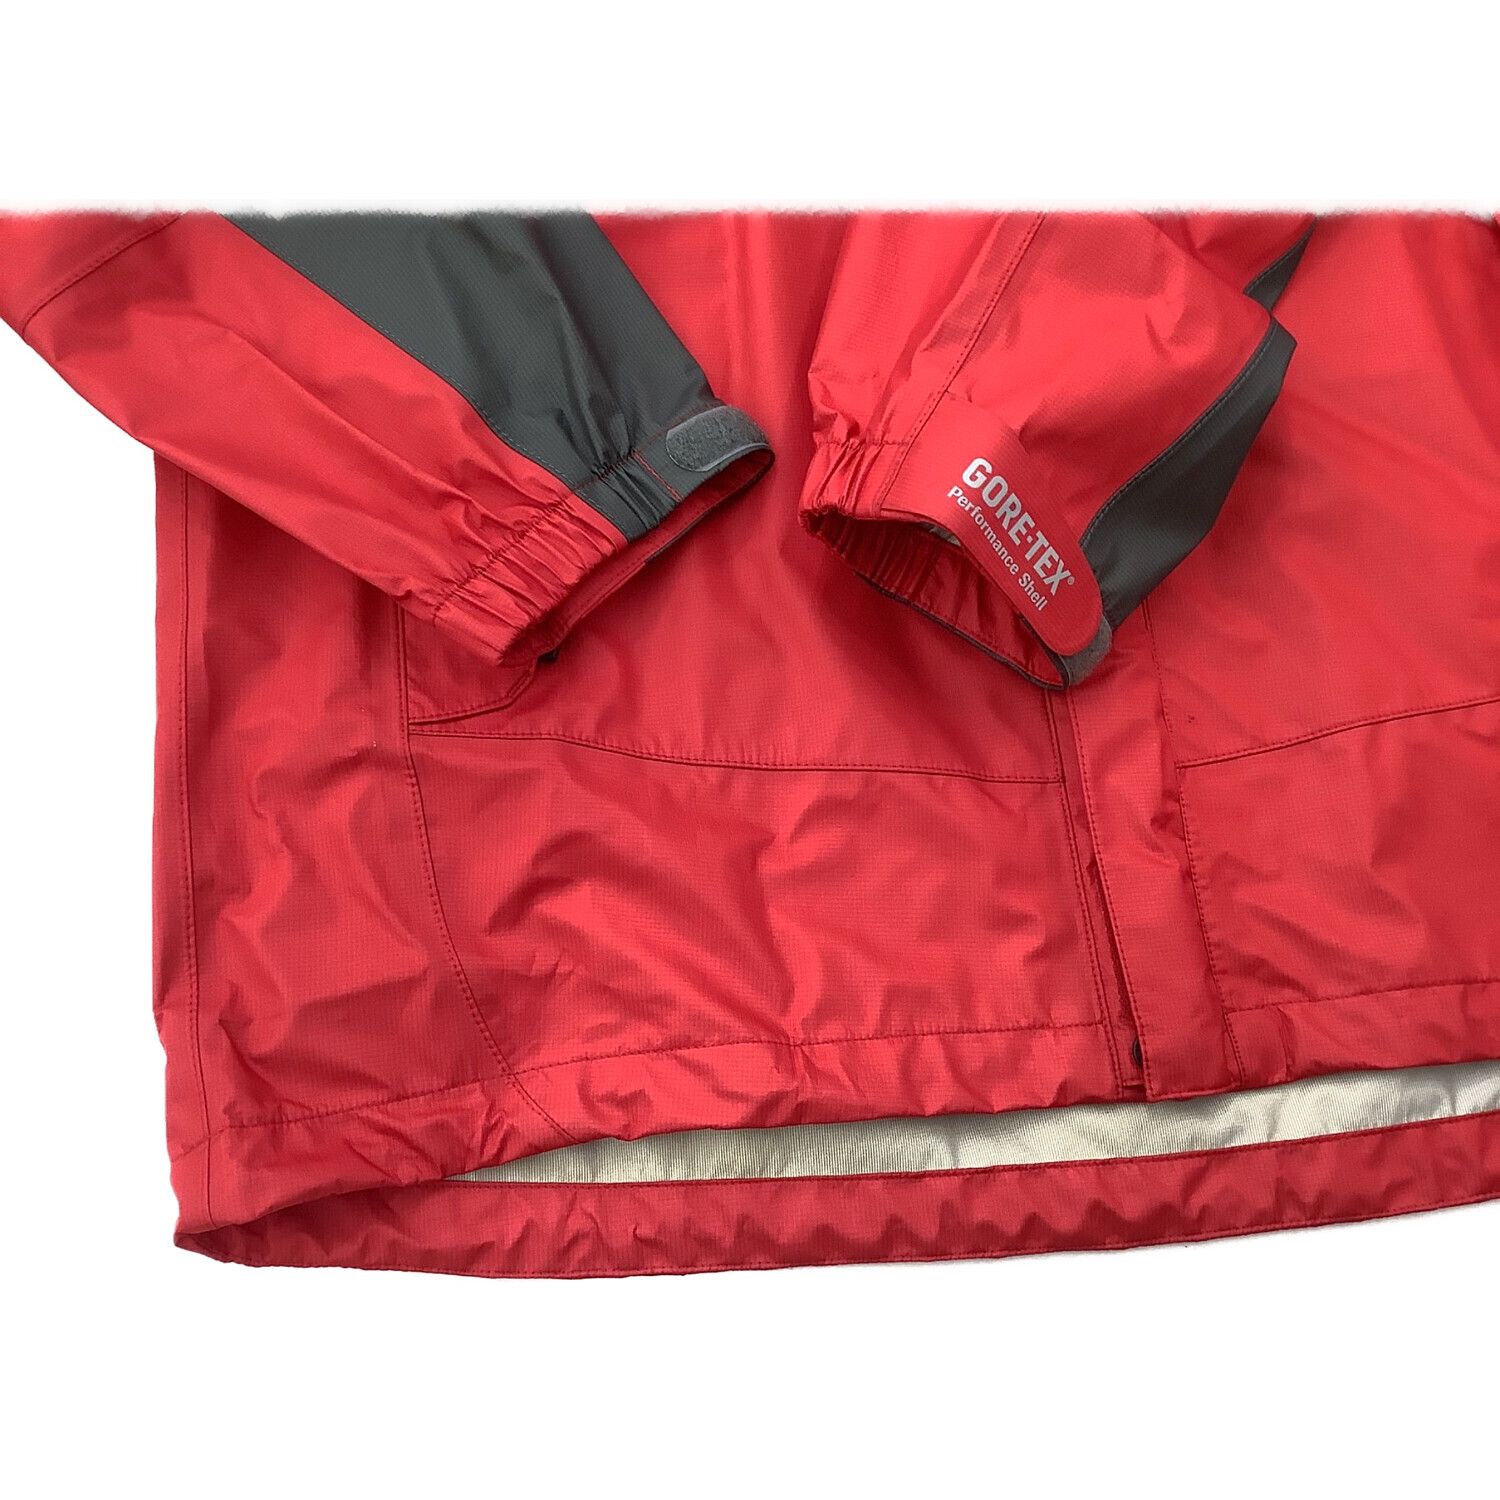 マムート GORE-TEX CLIMATE Light Rain-Suits JP1030091 レインウェア メンズ M ジャケット パンツ 登山 アウトドア M